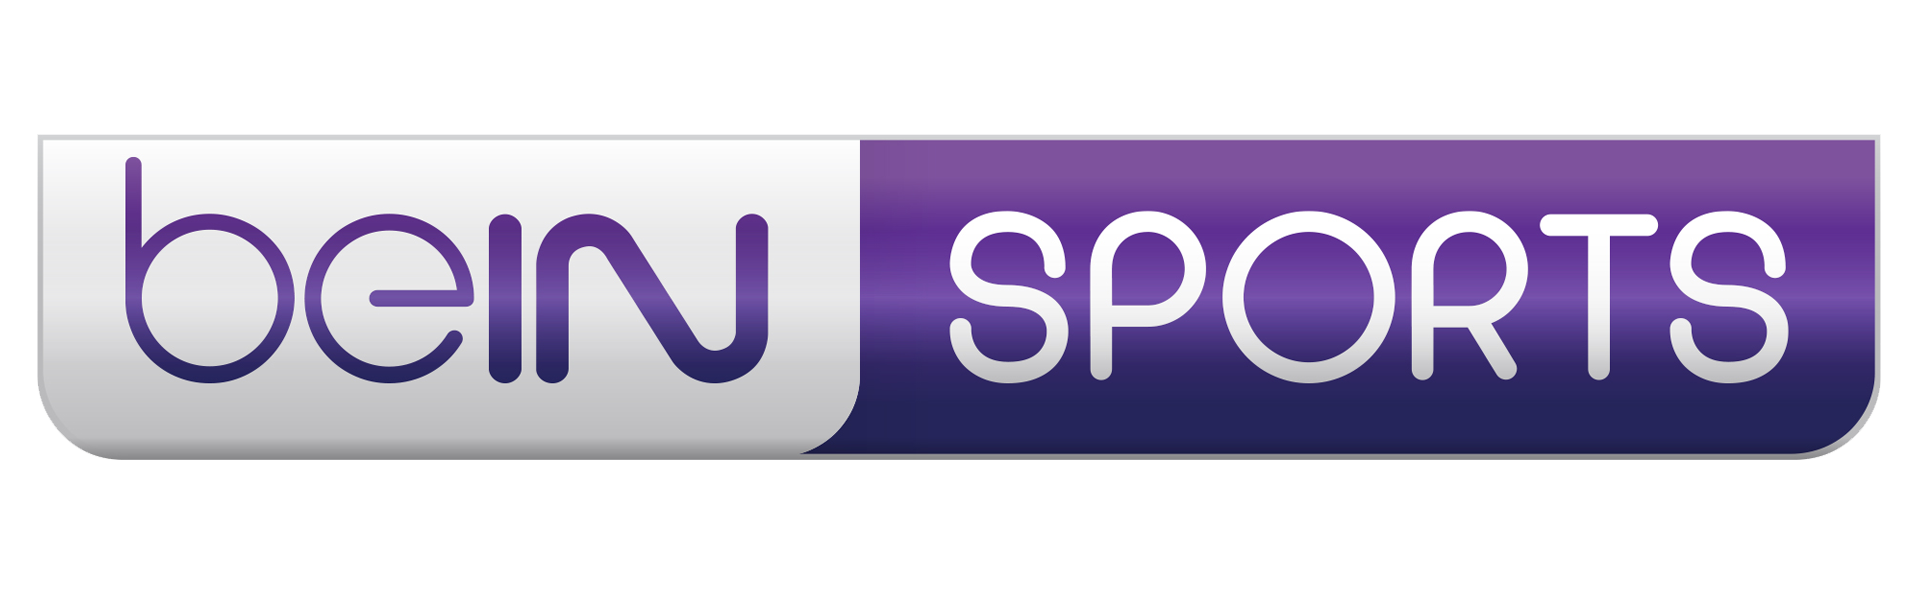 Stream bein sports. Bein Sport 1 logo. Логотип канала Bein Sports 2. Лого Беин Спортс. Bein Sports Max 1.